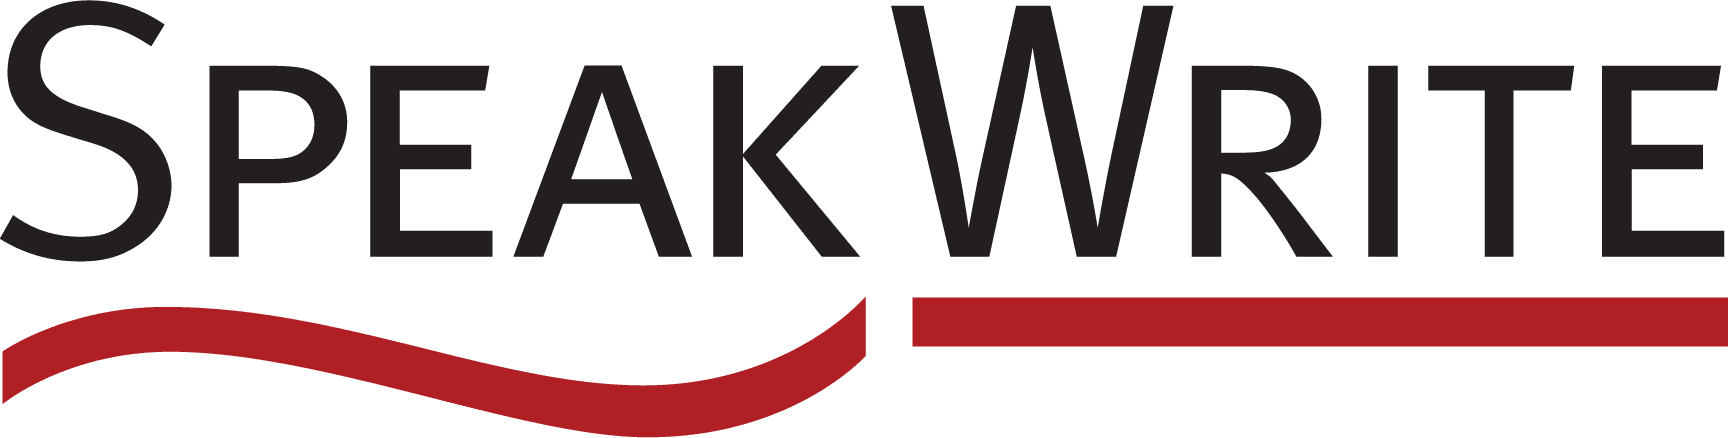 SpeakWrite logo